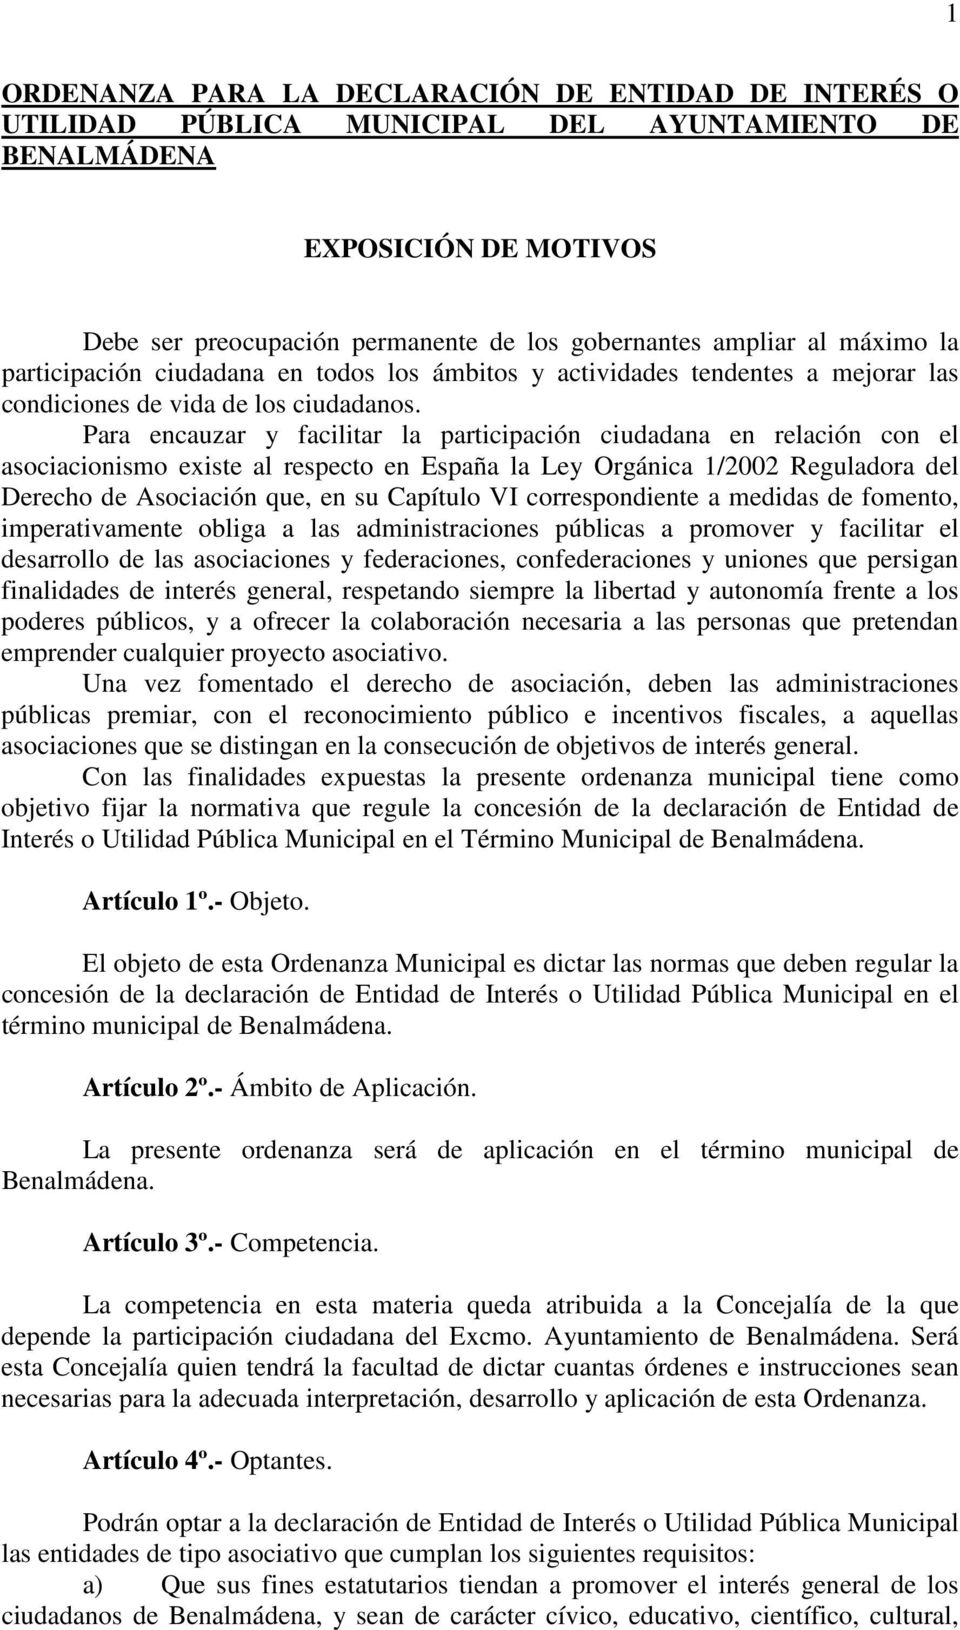 Para encauzar y facilitar la participación ciudadana en relación con el asociacionismo existe al respecto en España la Ley Orgánica 1/2002 Reguladora del Derecho de Asociación que, en su Capítulo VI